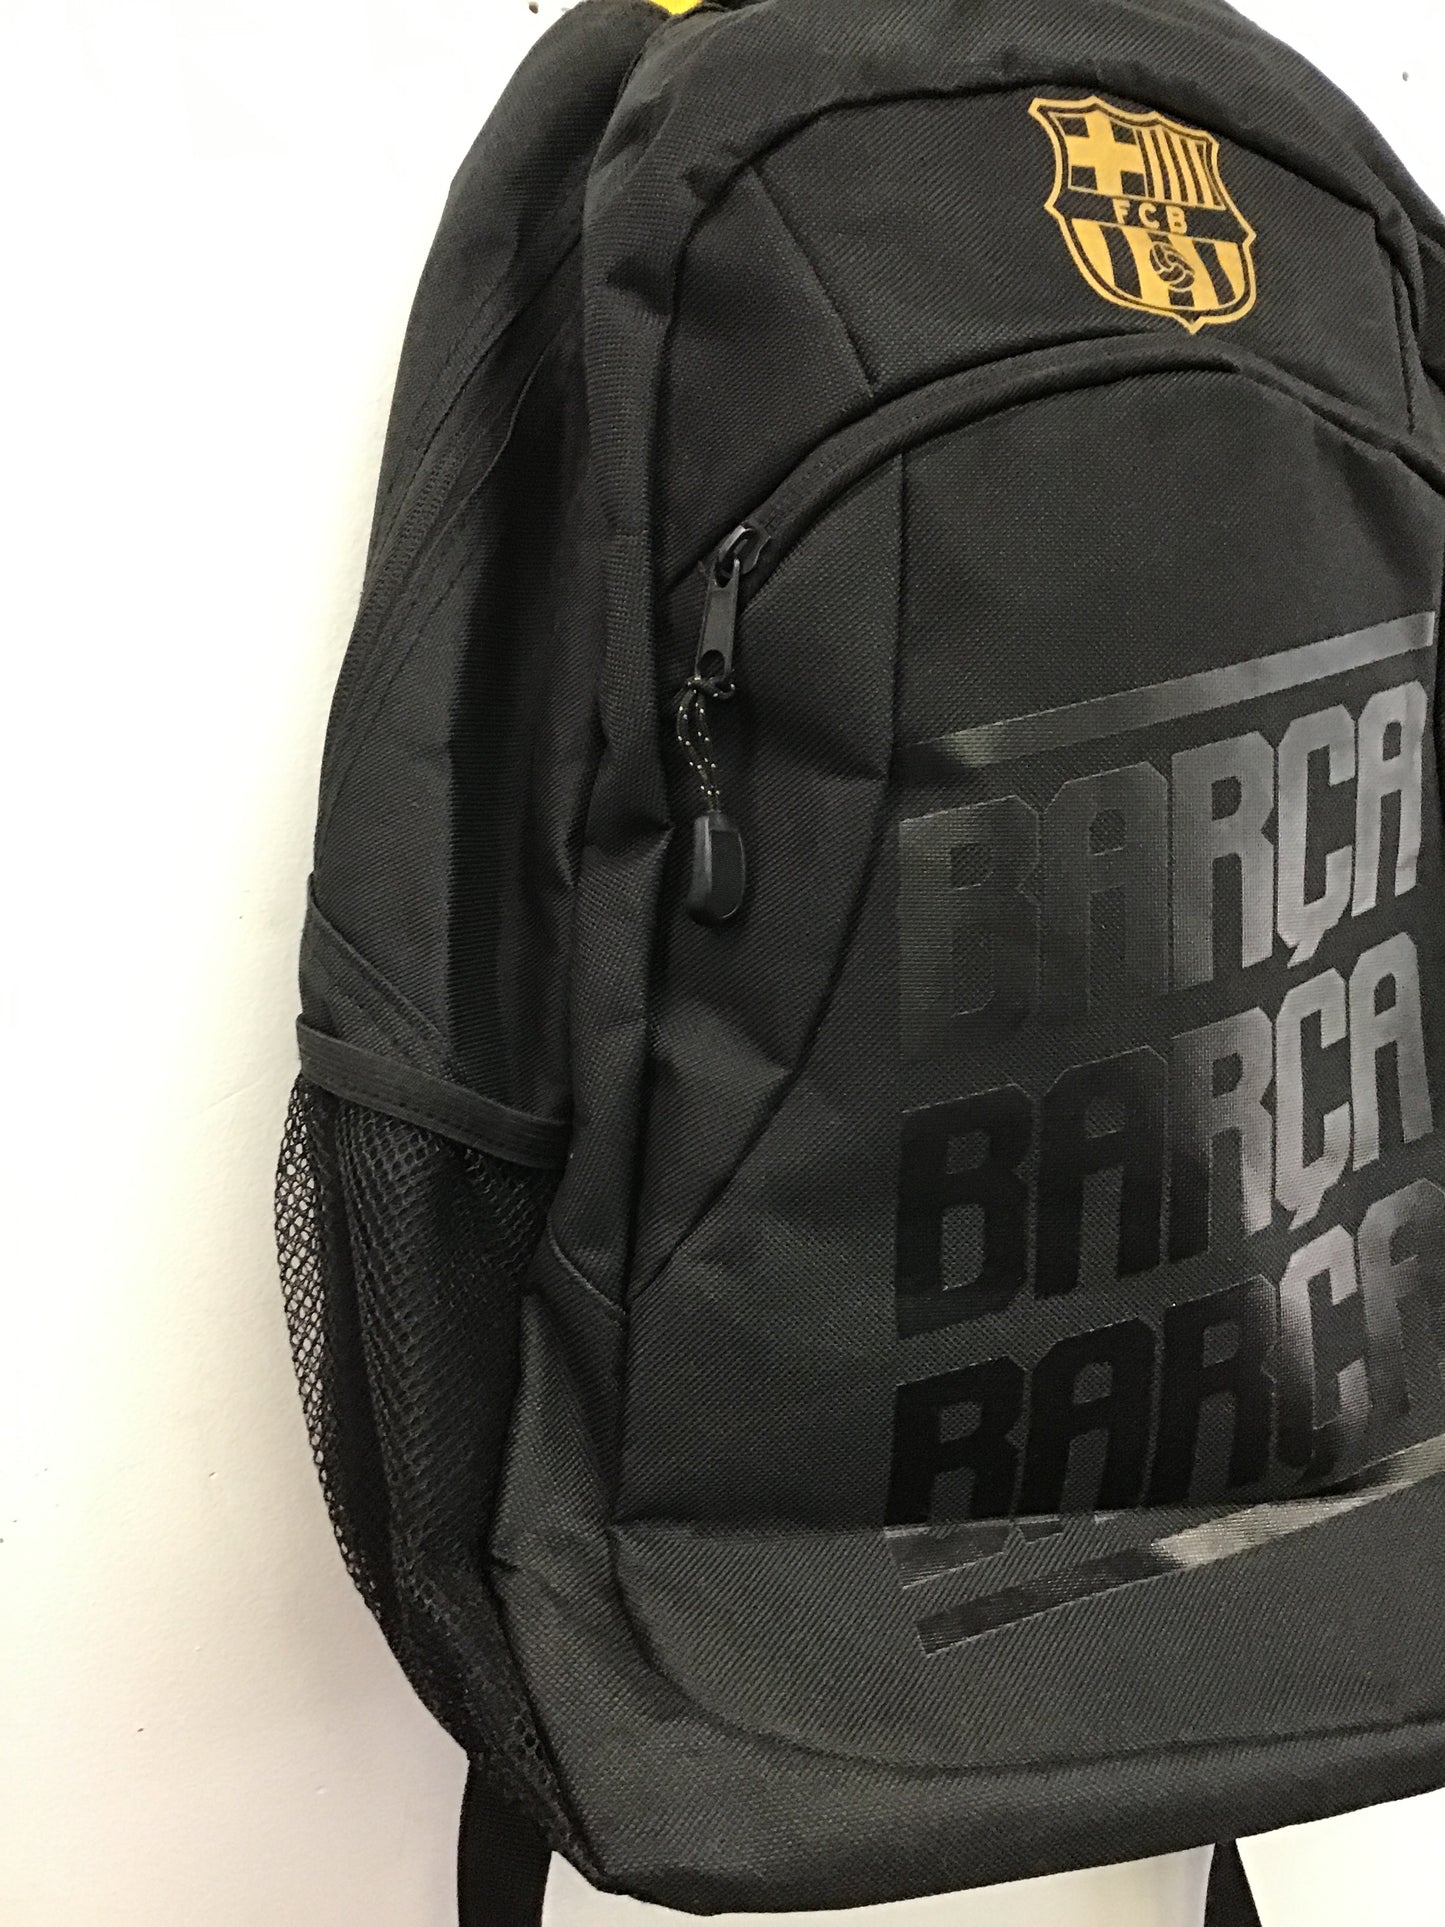 FCB Barca Black Backpack